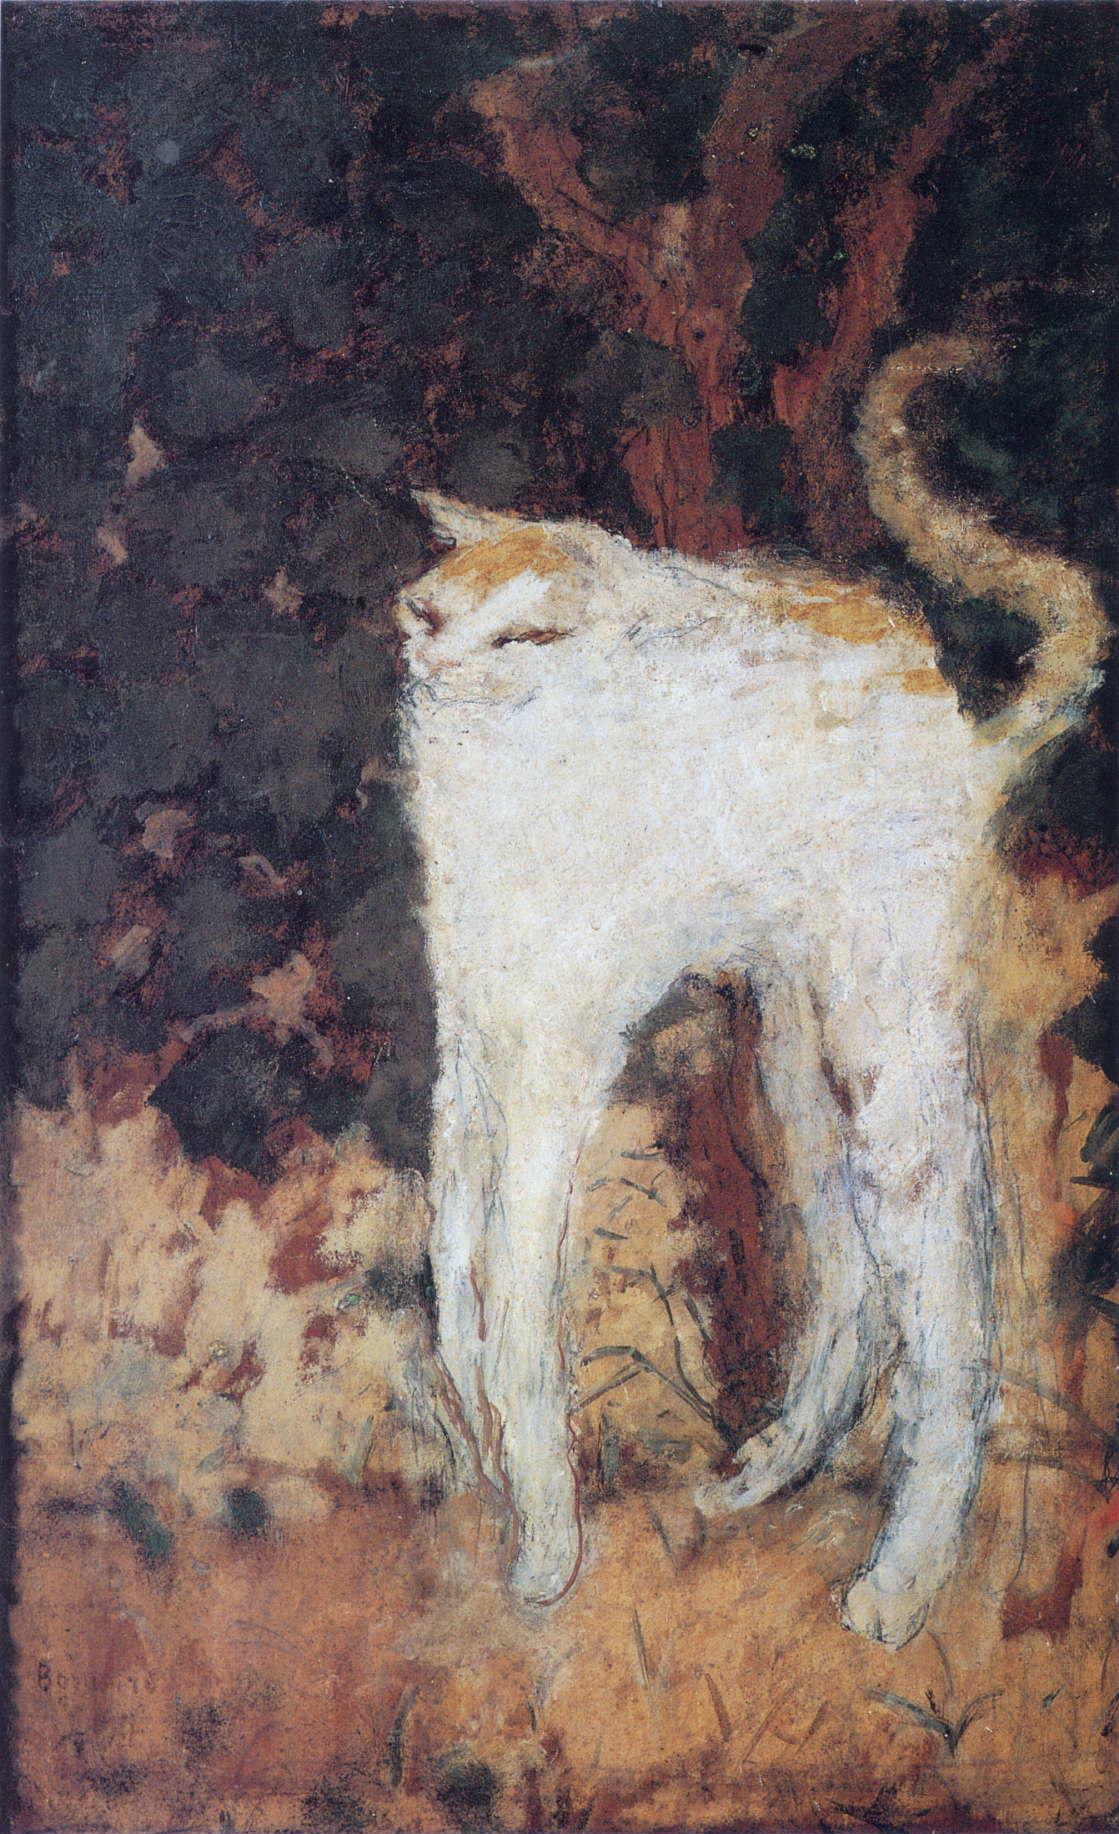 Il gatto bianco by Pierre Bonnard - 1894 - 51 x 33 cm Musée d'Orsay